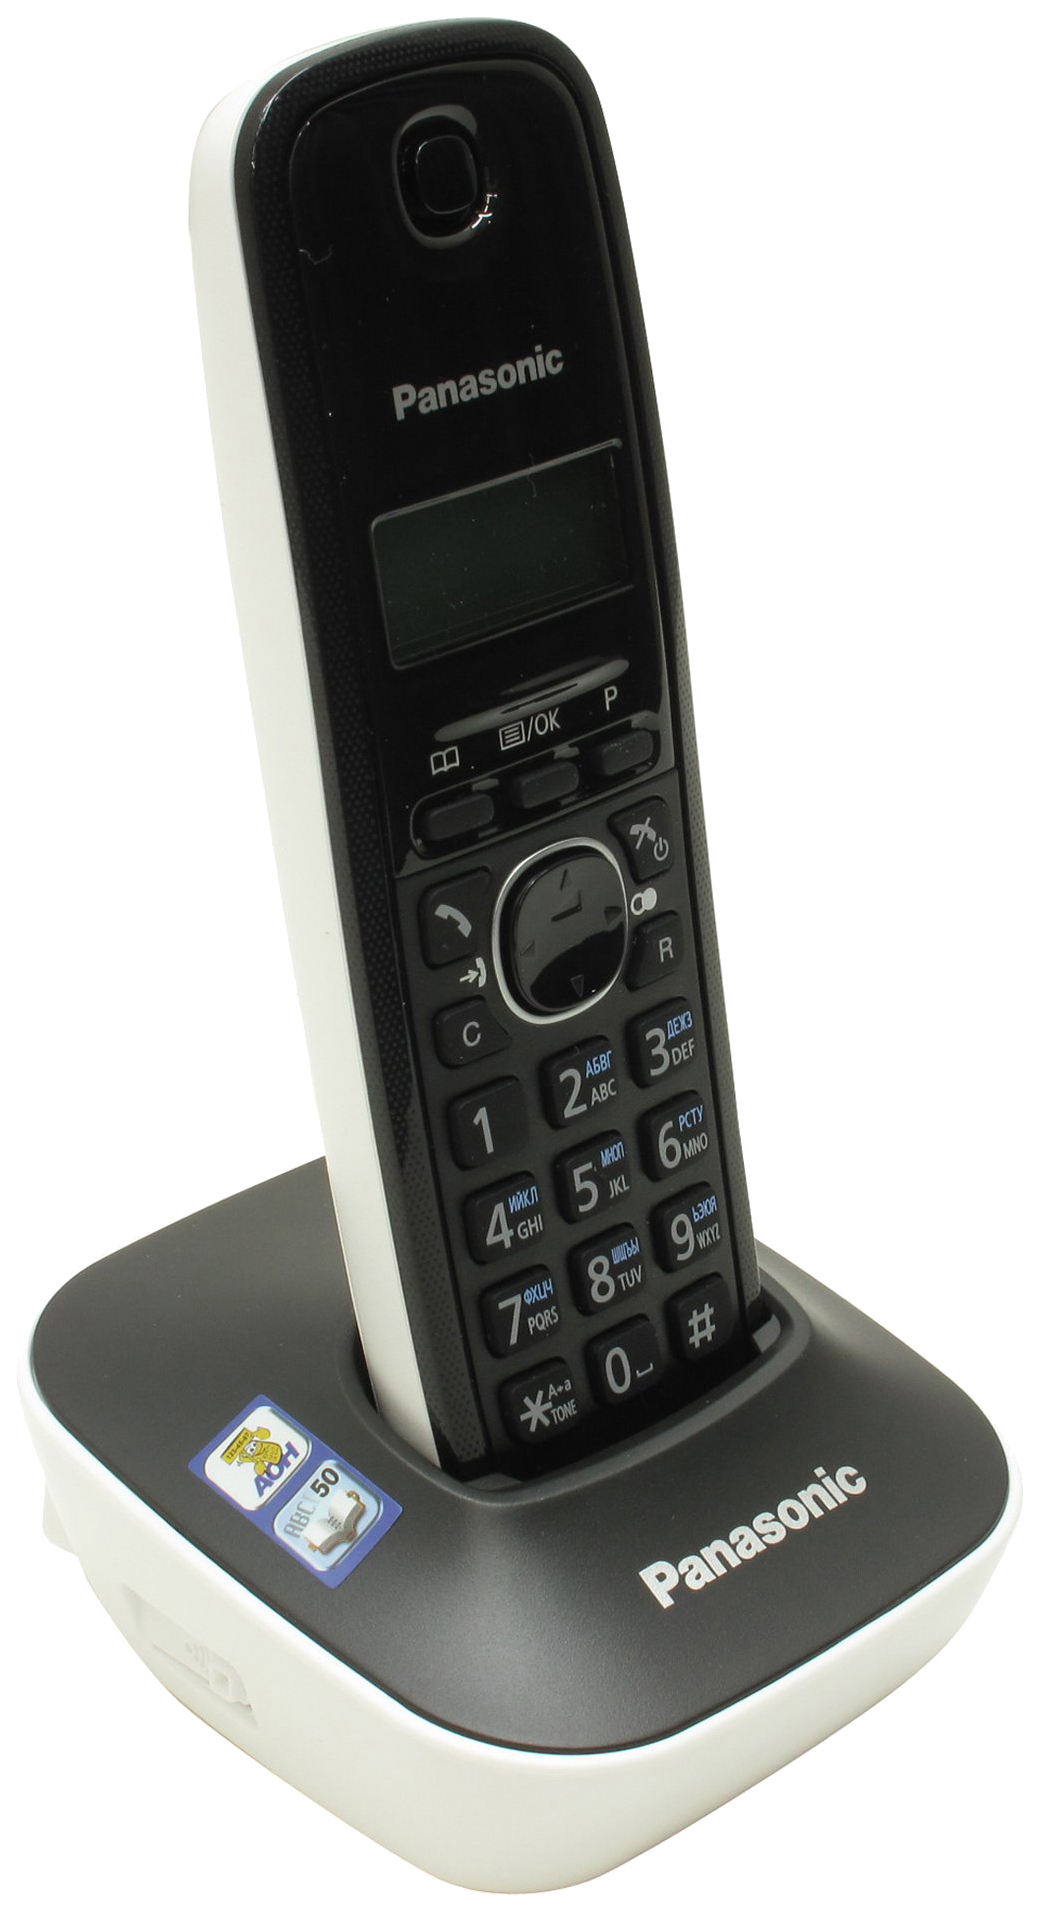 Телефон с радиотрубкой. Радиотелефон Panasonic TG 1611ruh. Радиотелефон DECT Panasonic KX-tg1611ruh. Радиотелефон зфтфыщтшс ЛЧ еп 1611. Panasonic KX-tg1611ruw (белый).